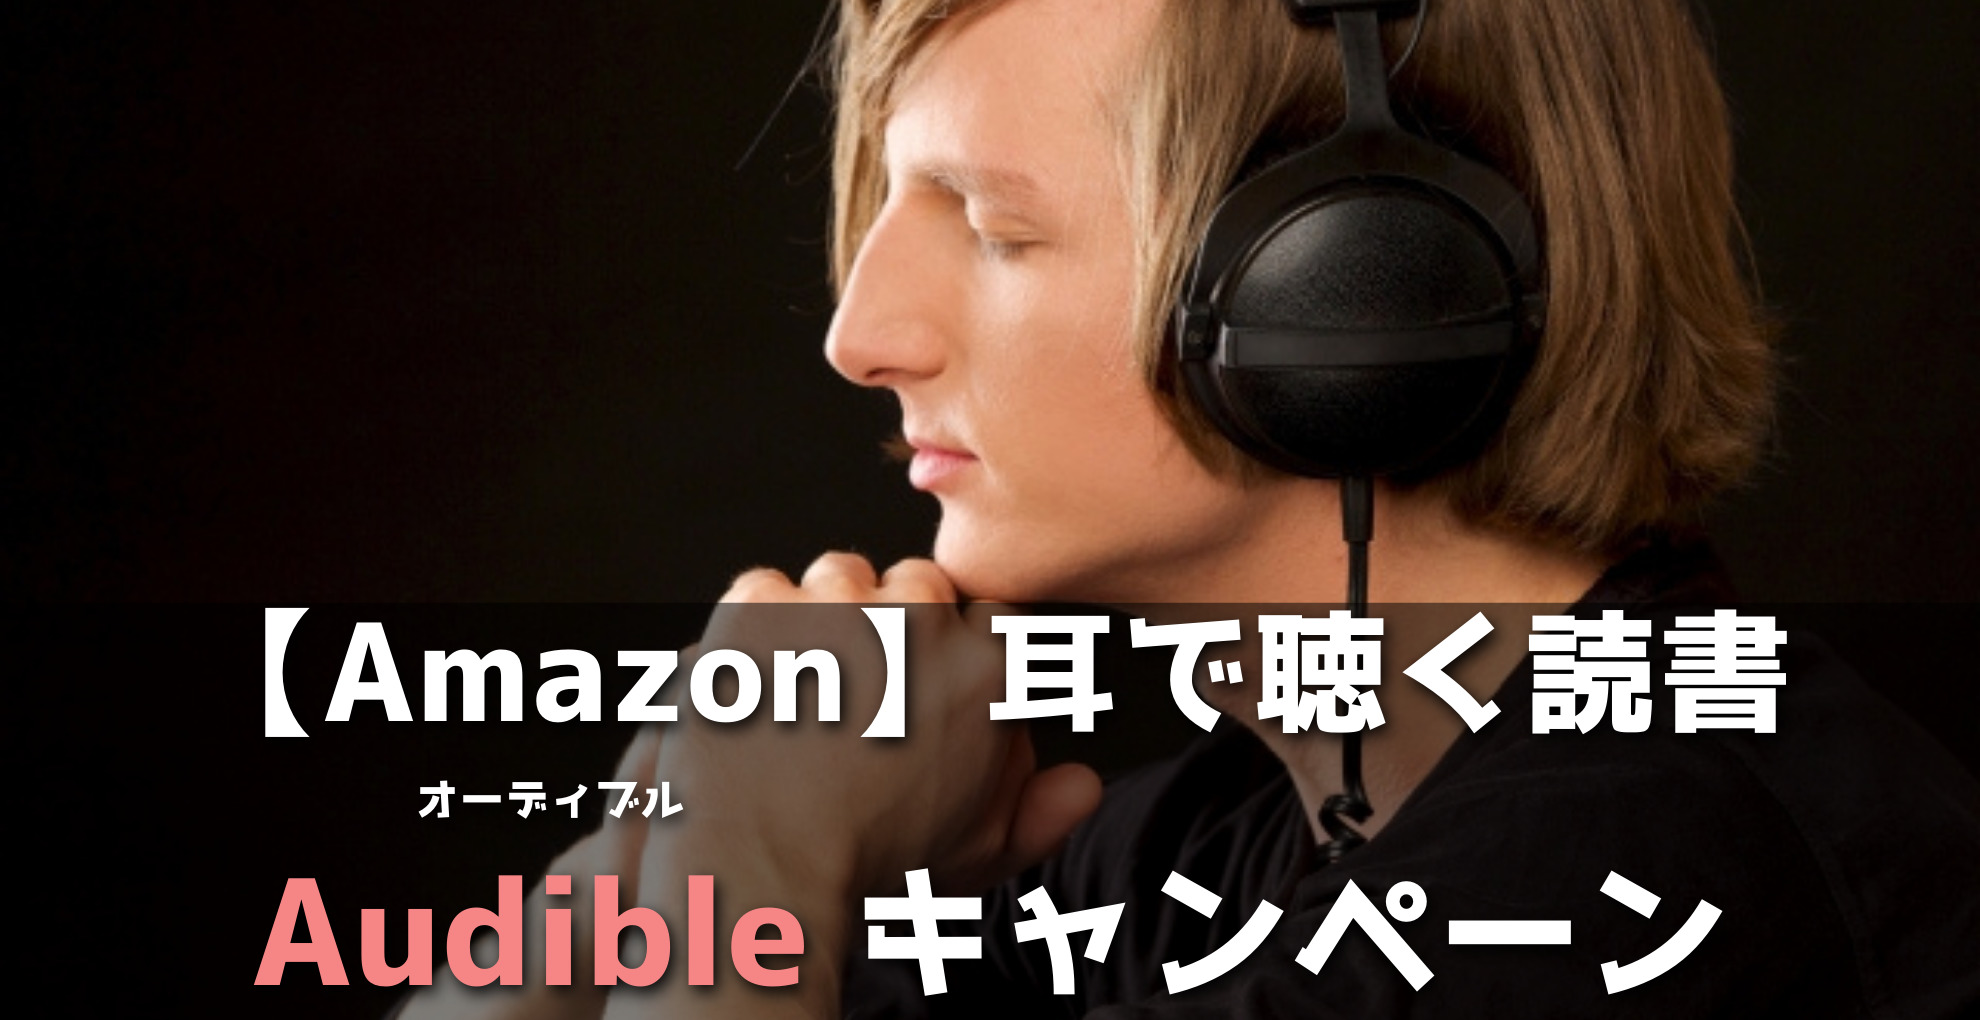 Amazon耳で聴く読書オーディブルキャンペーン